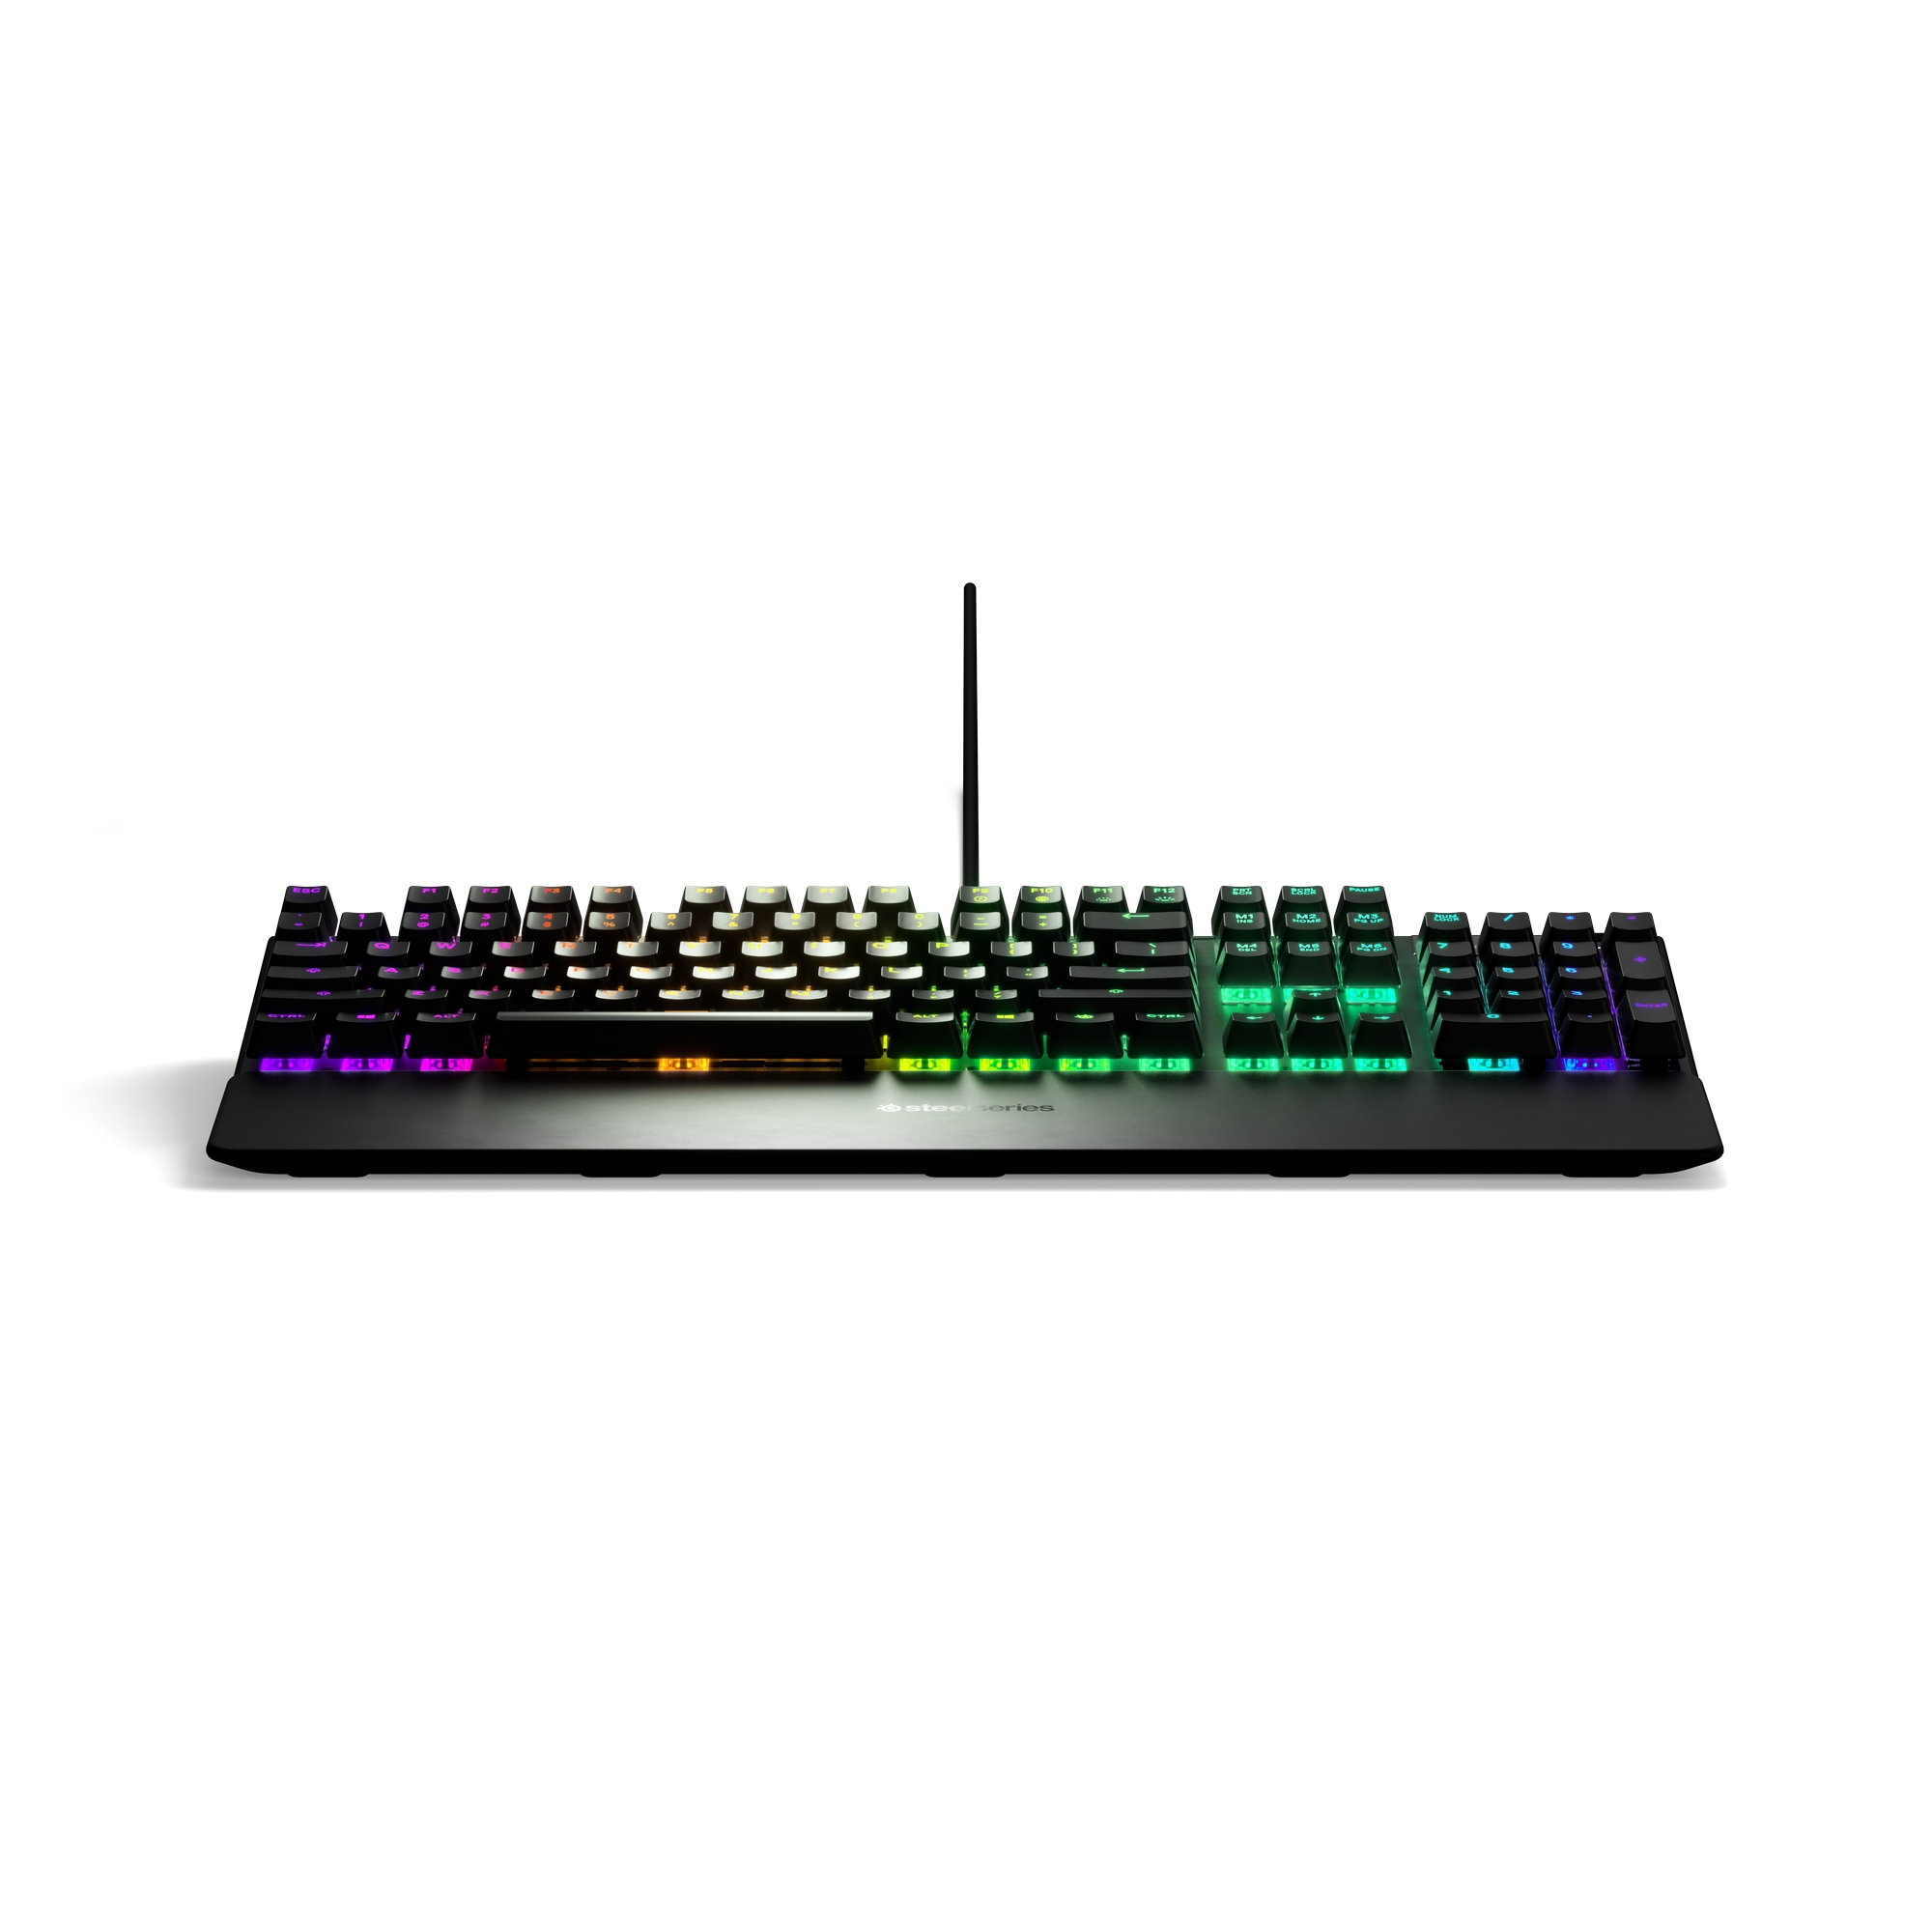 SteelSeries - SteelSeries APEX 5 USB RGB Hybrid Mechanical Gaming Keyboard - UK Layout (64534)